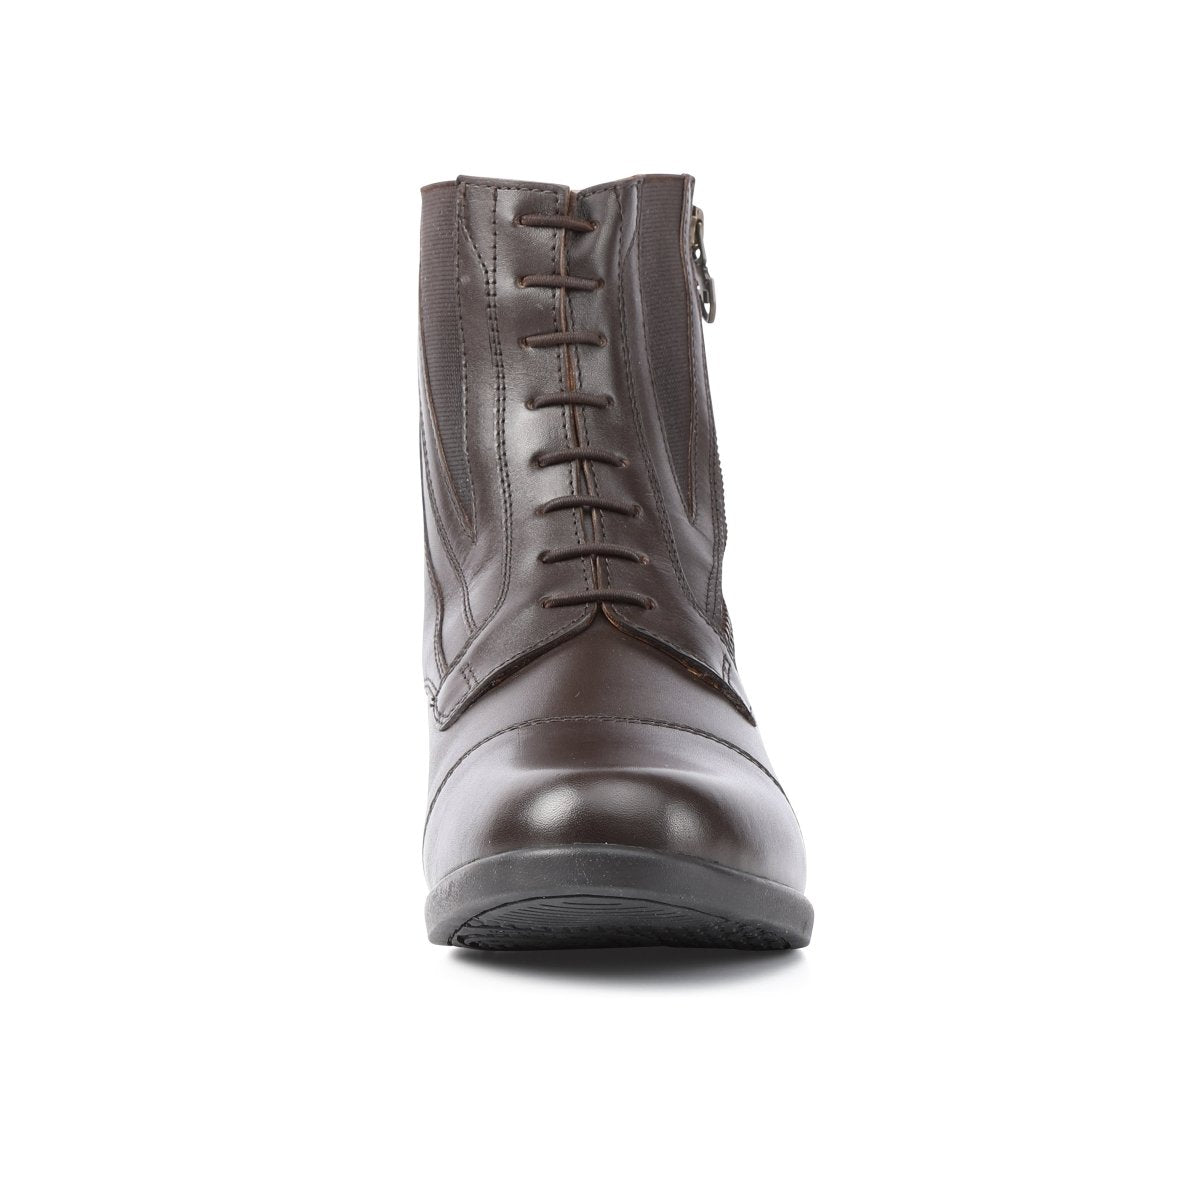 Moretta Alessia Leather Paddock Boot - Black - 4/37